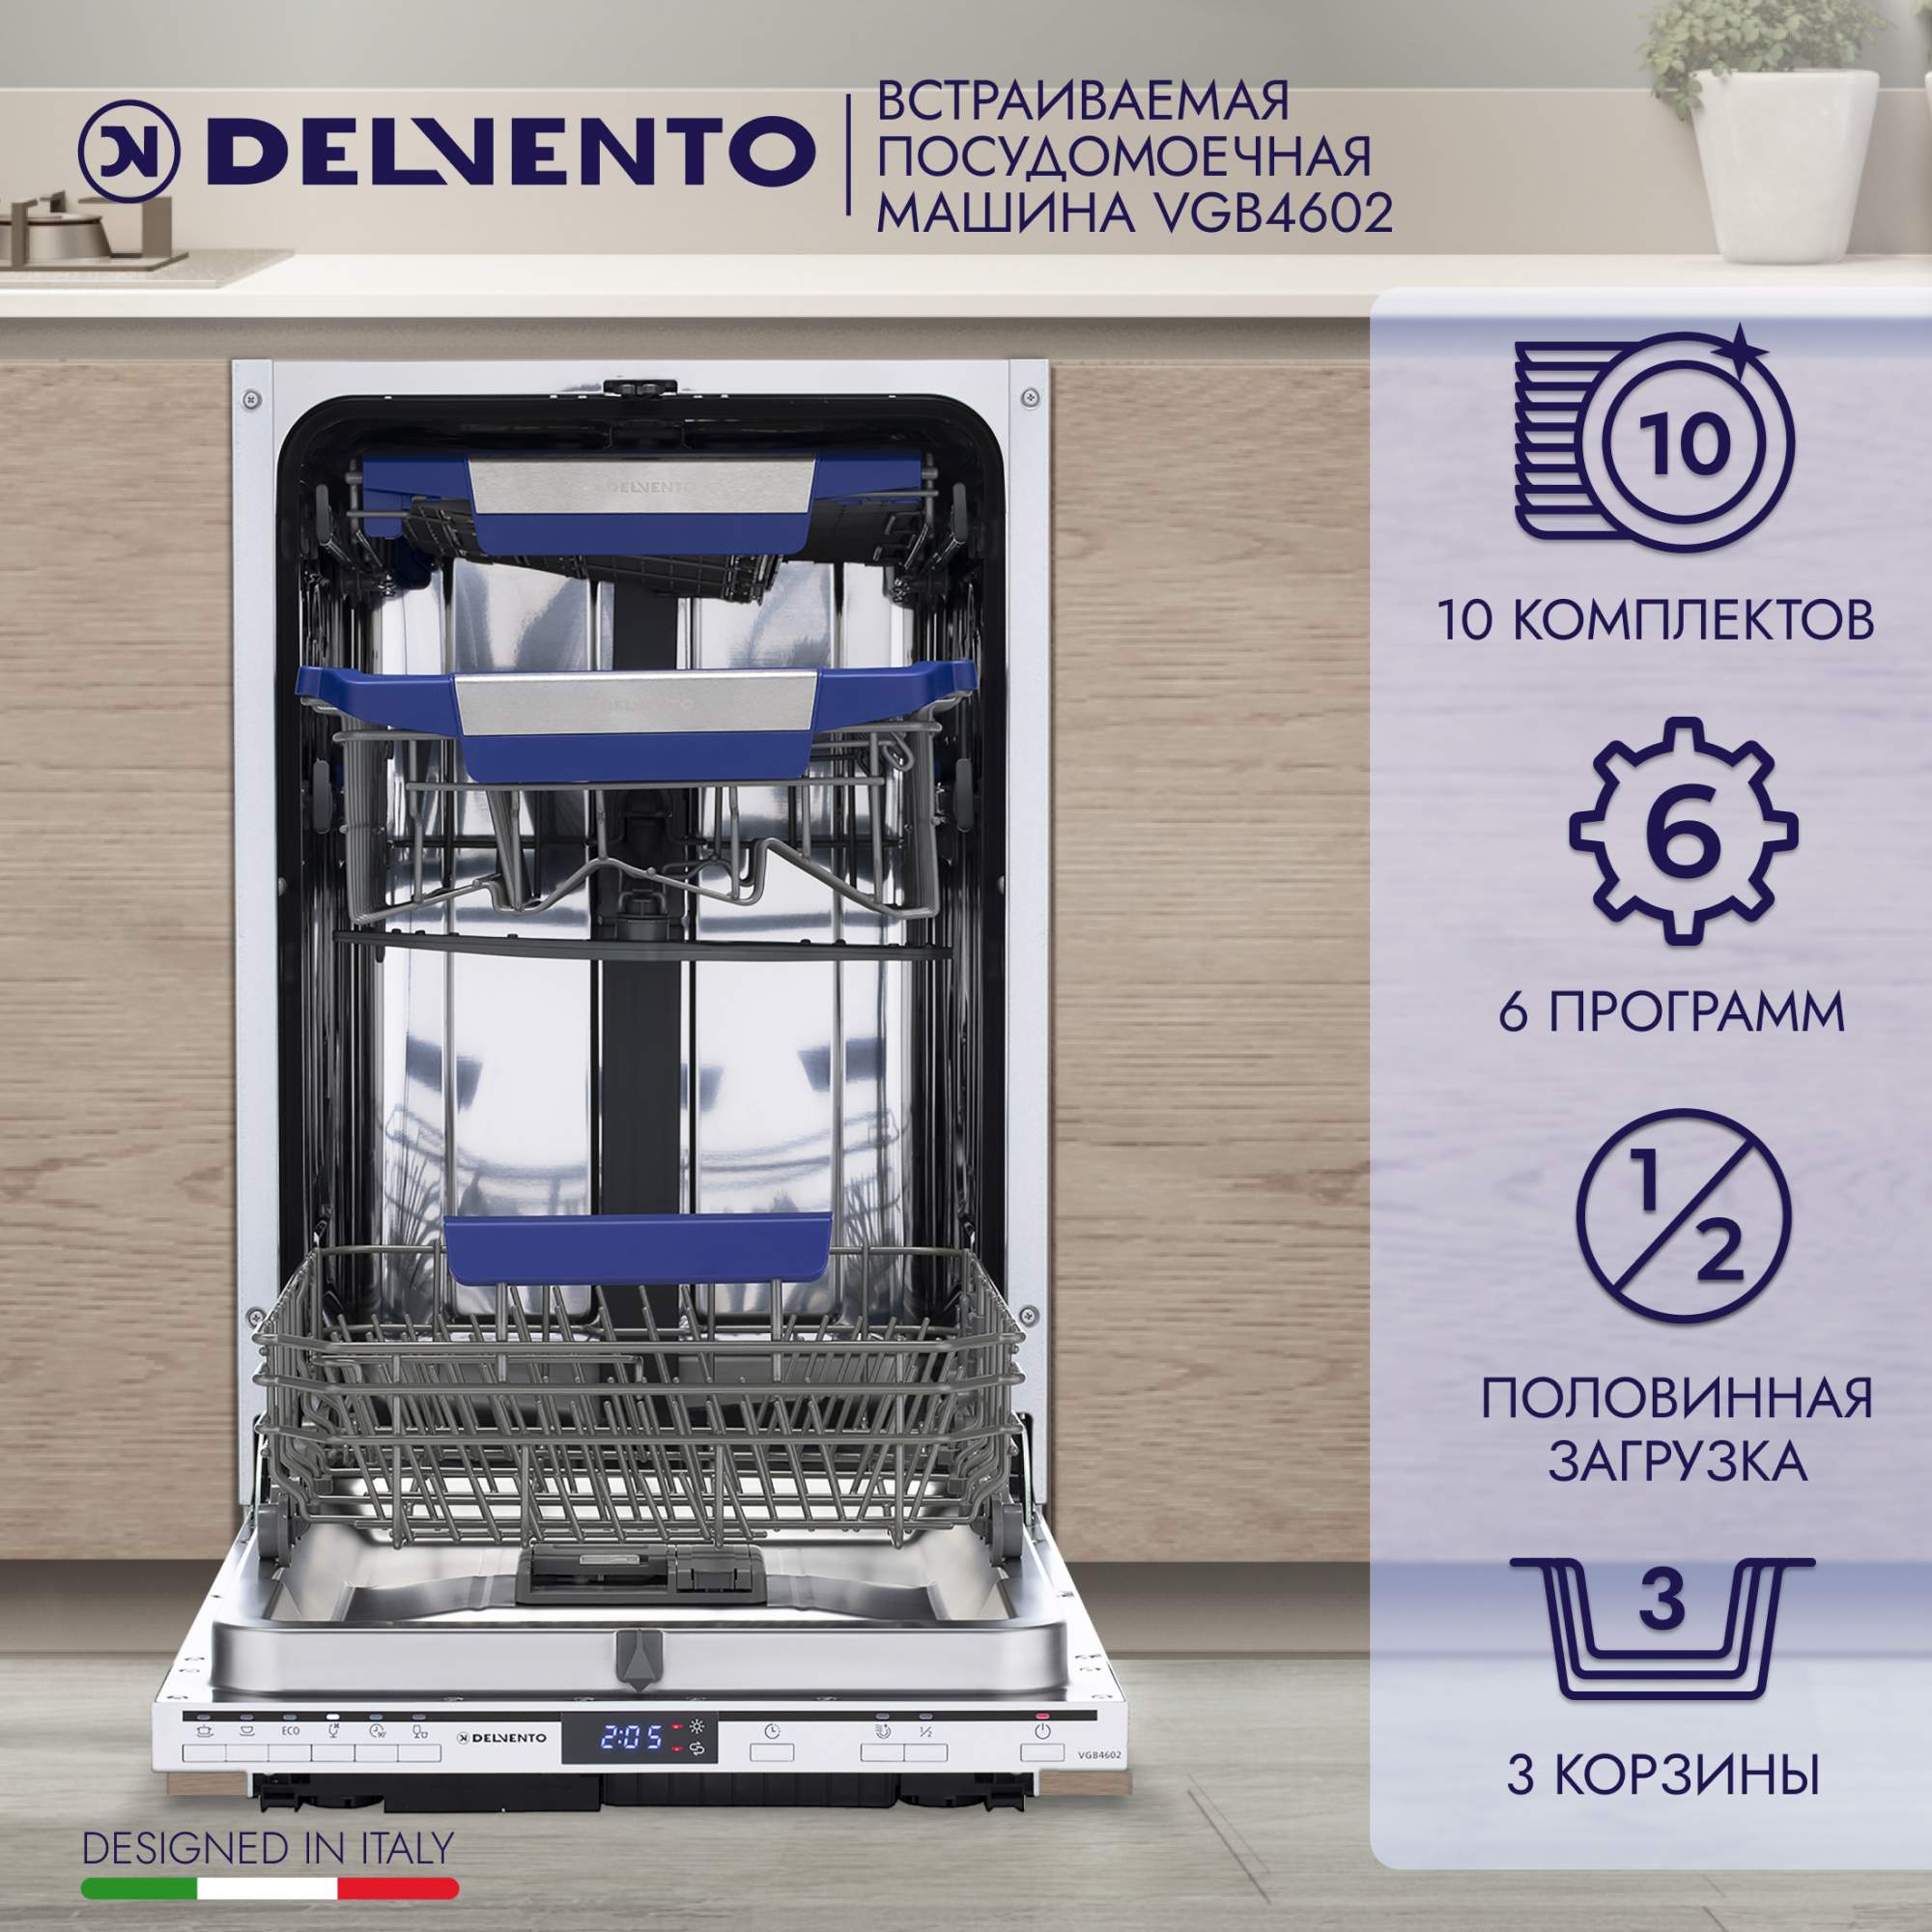 Встраиваемая посудомоечная машина DELVENTO VGB4602, купить в Москве, цены в интернет-магазинах на Мегамаркет